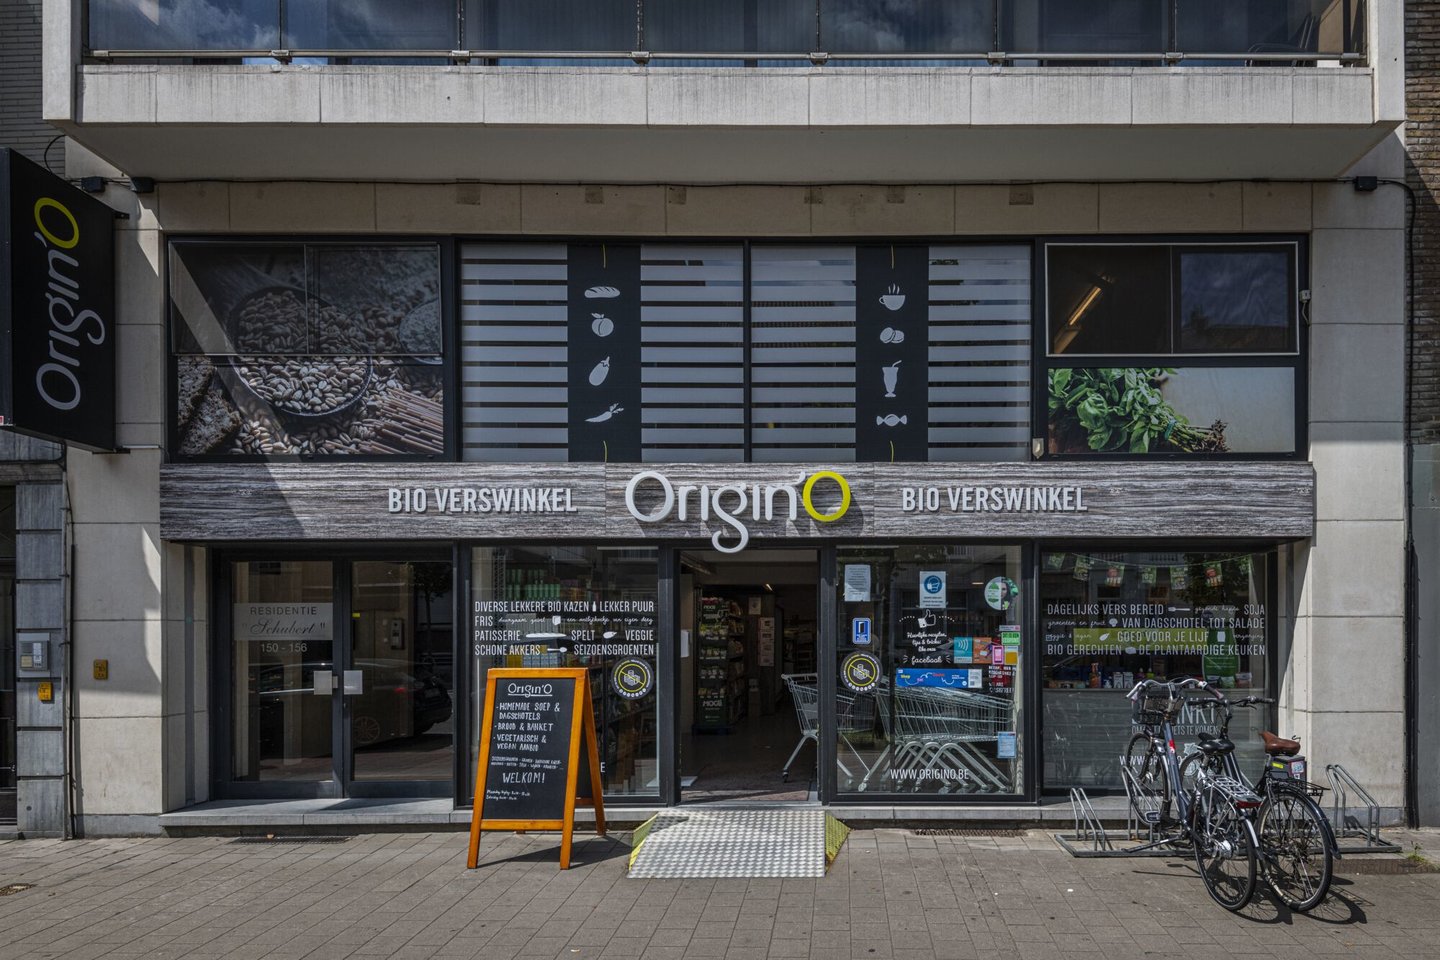 Etalage van Origin'O, een biologische verswinkel in Gent